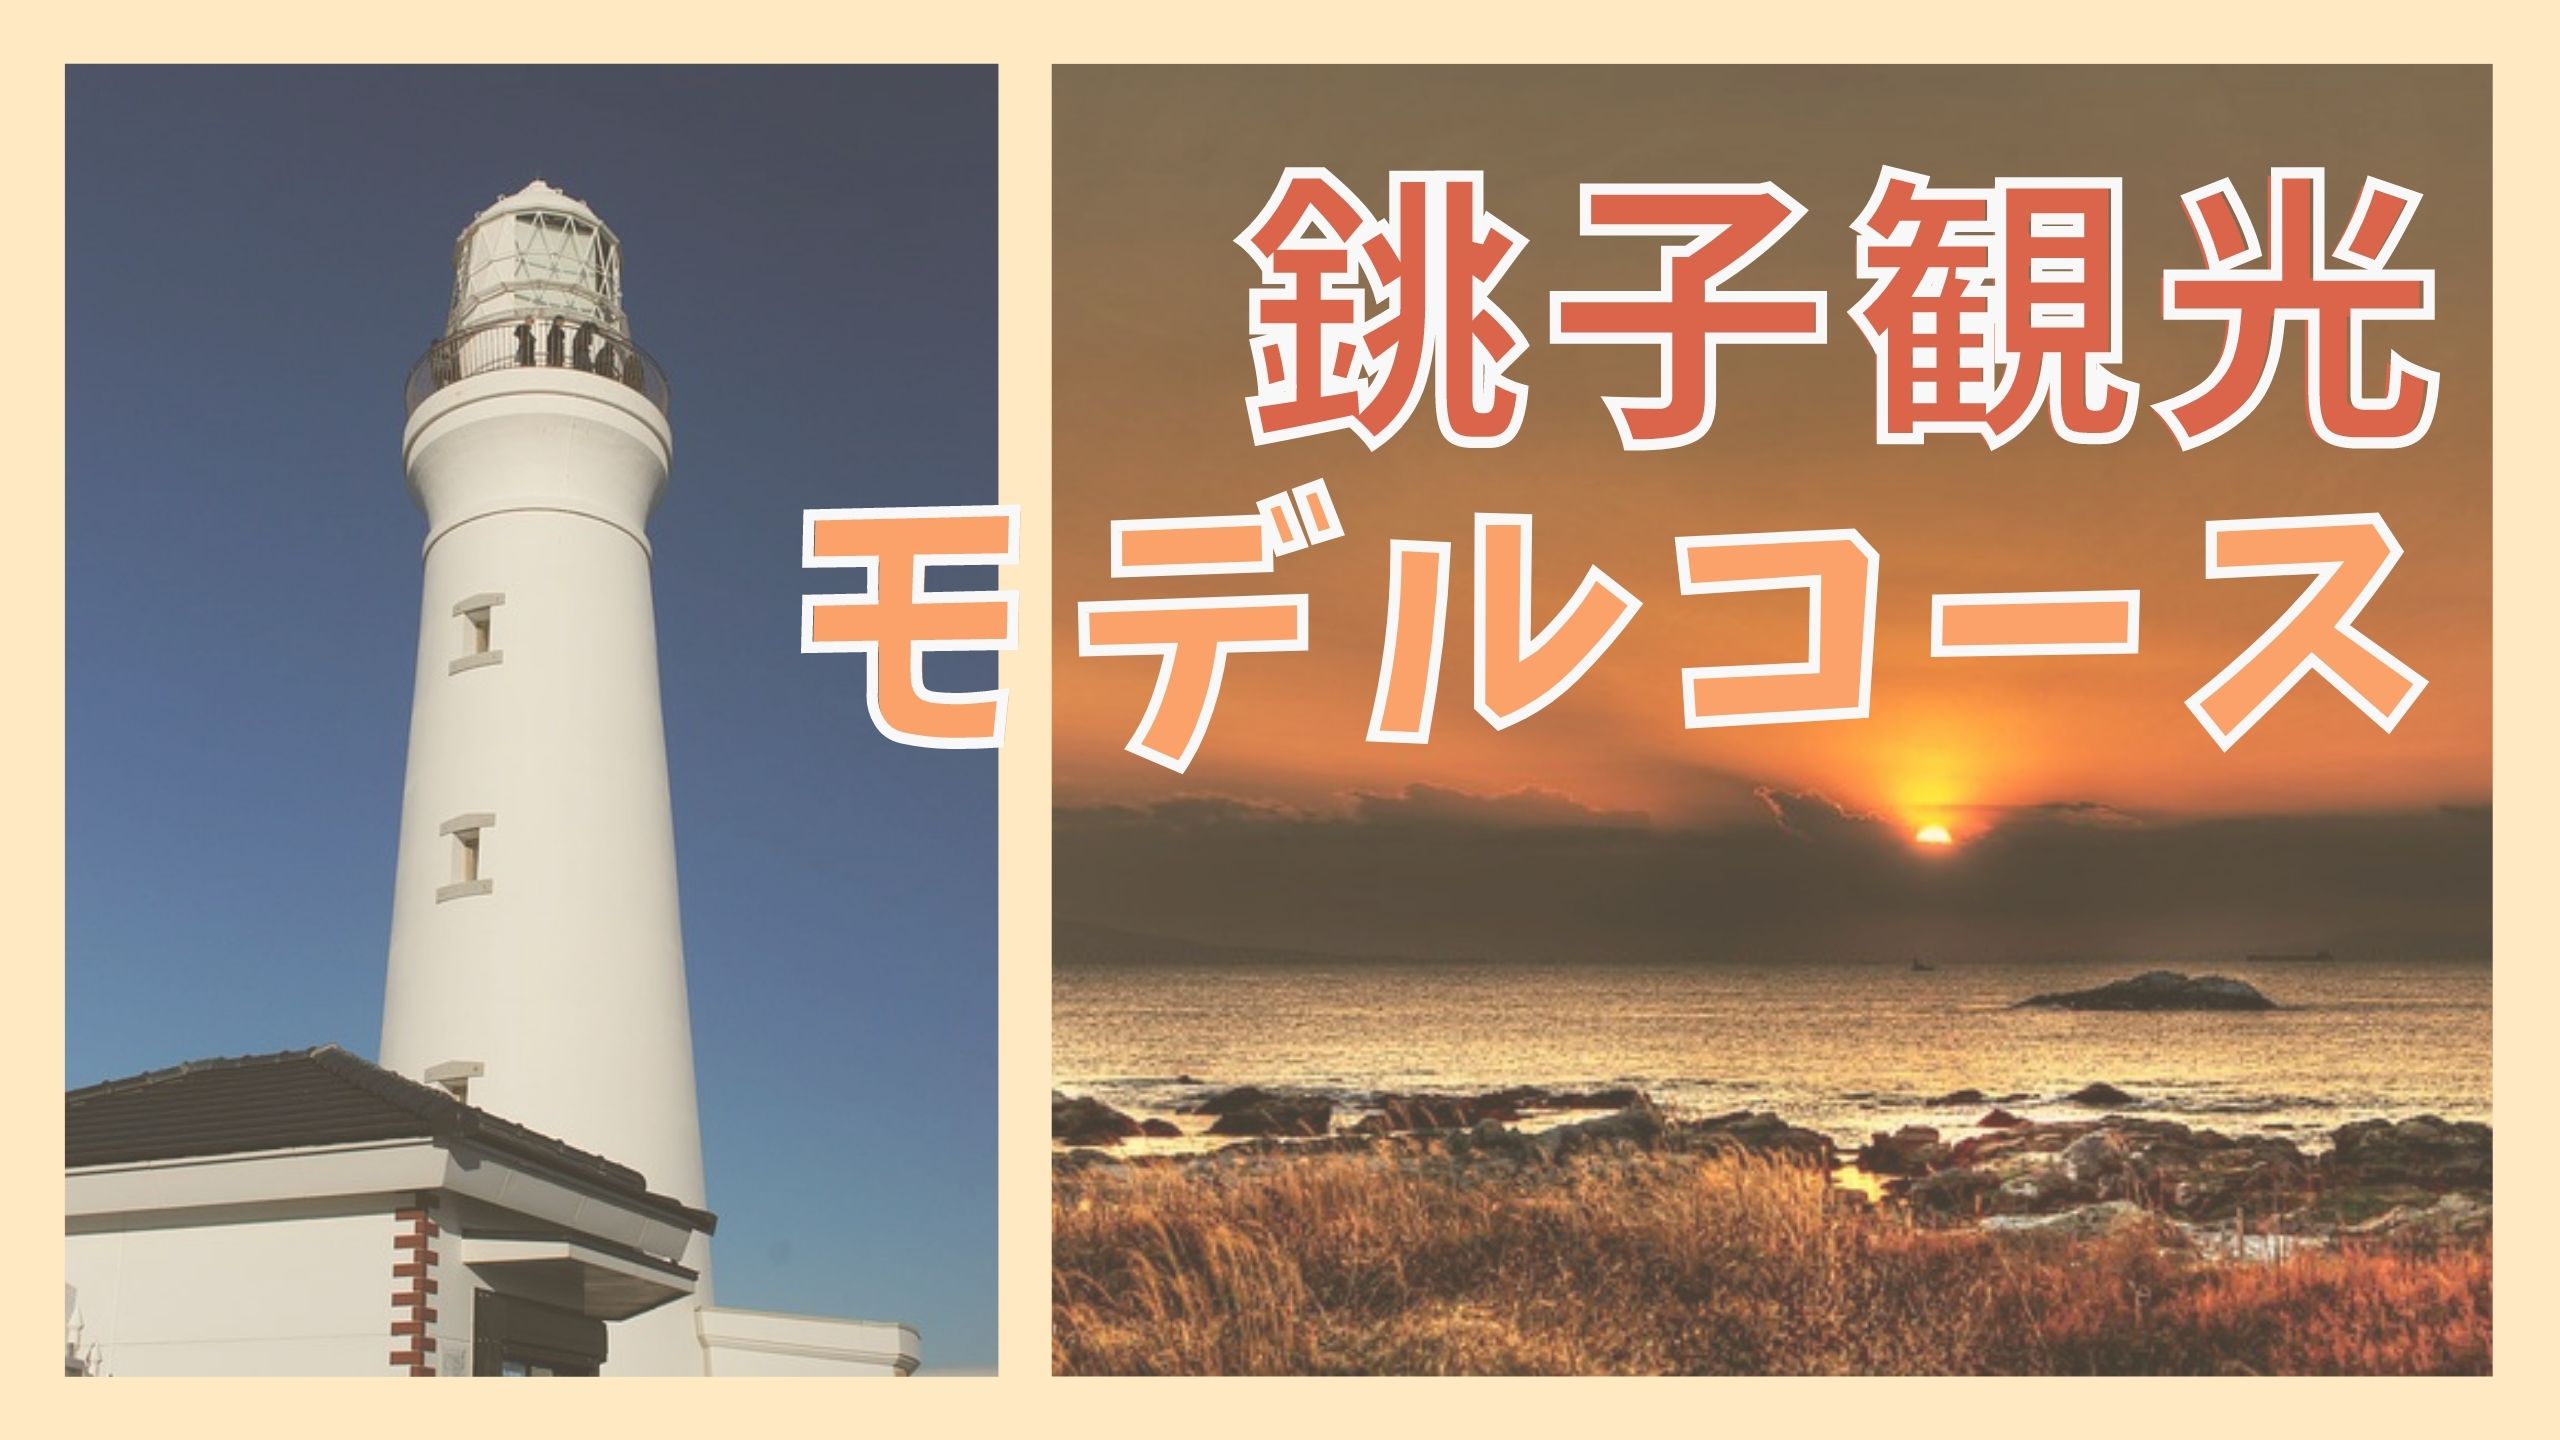 銚子観光モデルコース 8つの観光名所と犬吠埼温泉の人気宿 ジャパンワンダラー